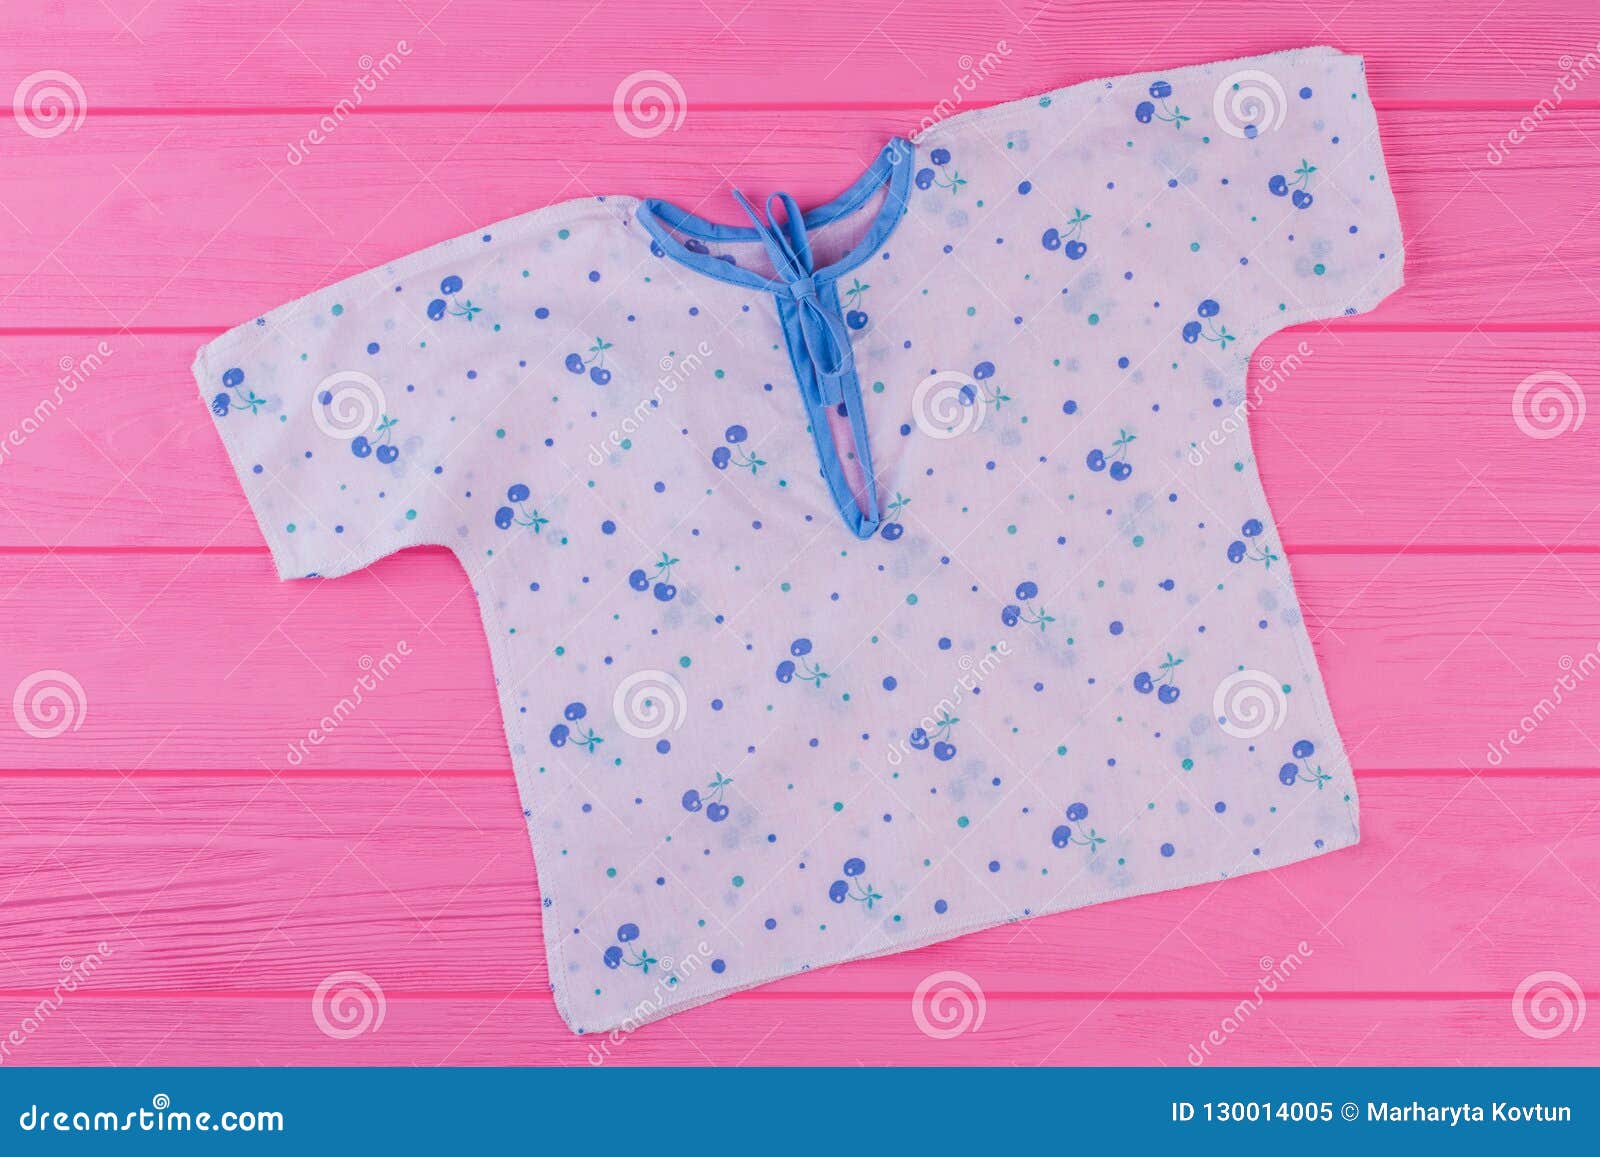 Camisa Impresa Blanca El Bebé Recién Nacido En Fondo Rosado Imagen de archivo - Imagen de ropa, infante: 130014005